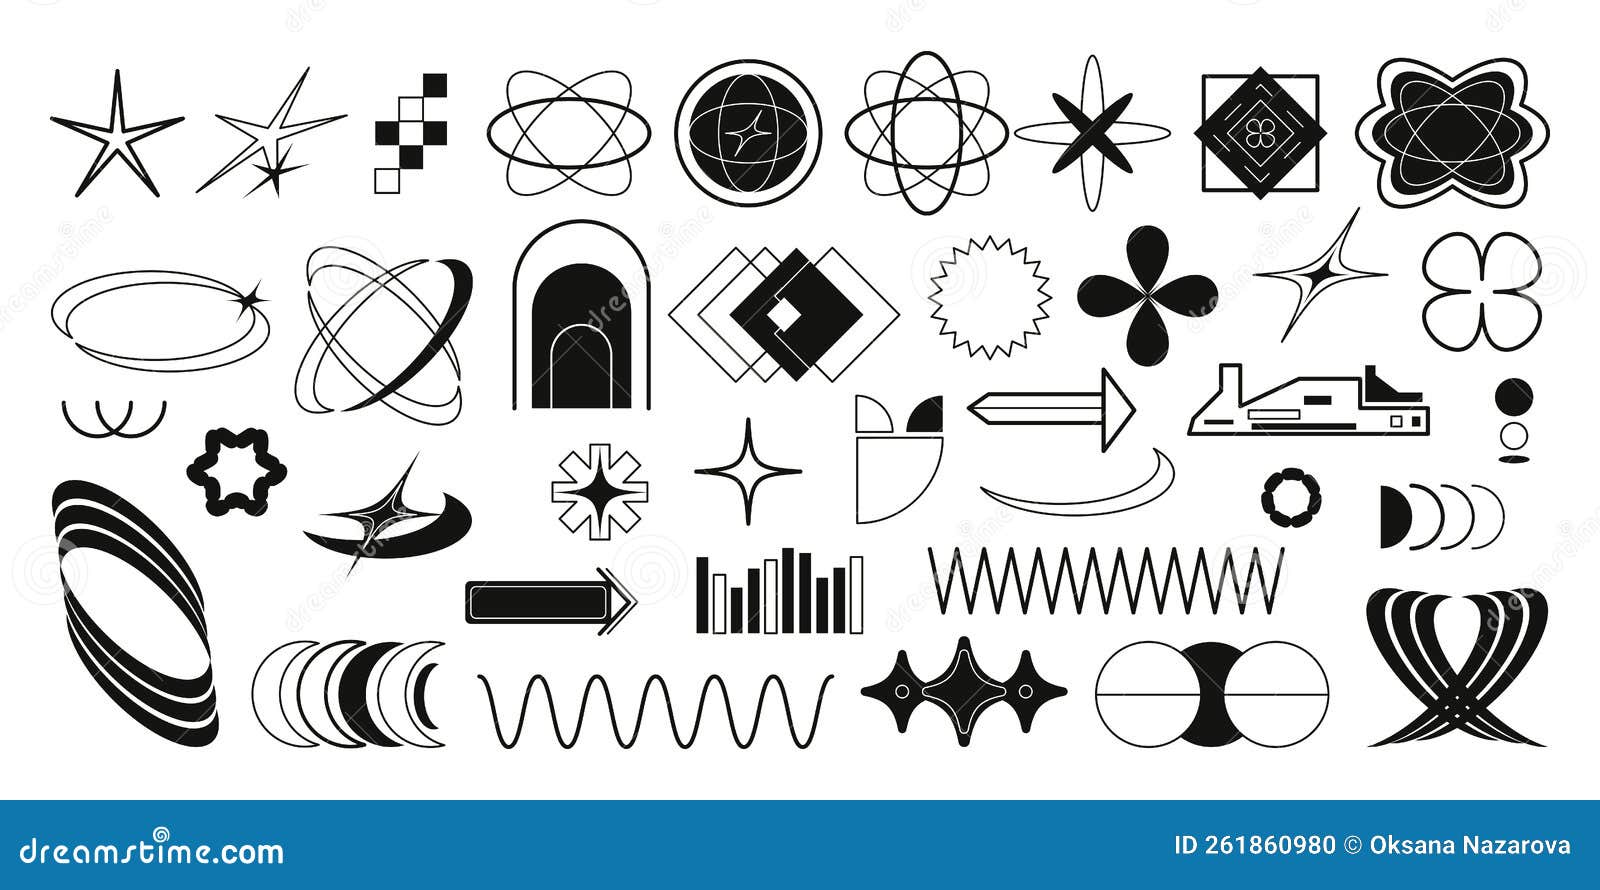 Coleção de símbolos geométricos gráficos abstratos e objetos no estilo y2k  elementos futuristas retrô